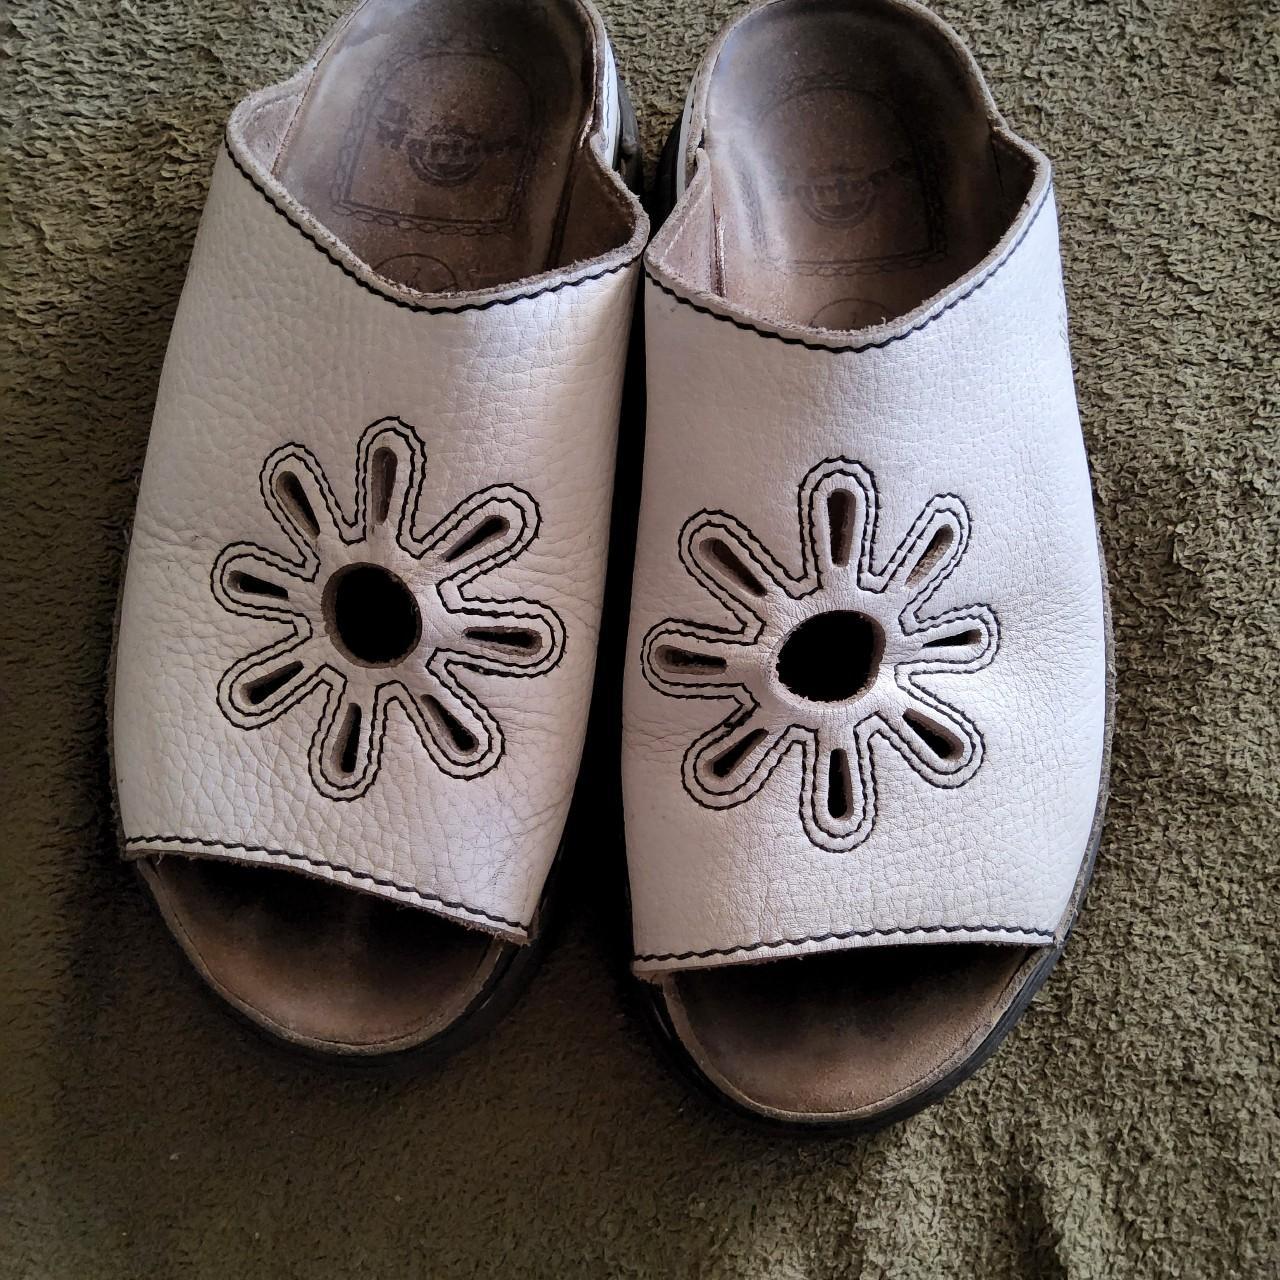 Doc Martens Vintage Flower Cut-out sandals Rare... - Depop